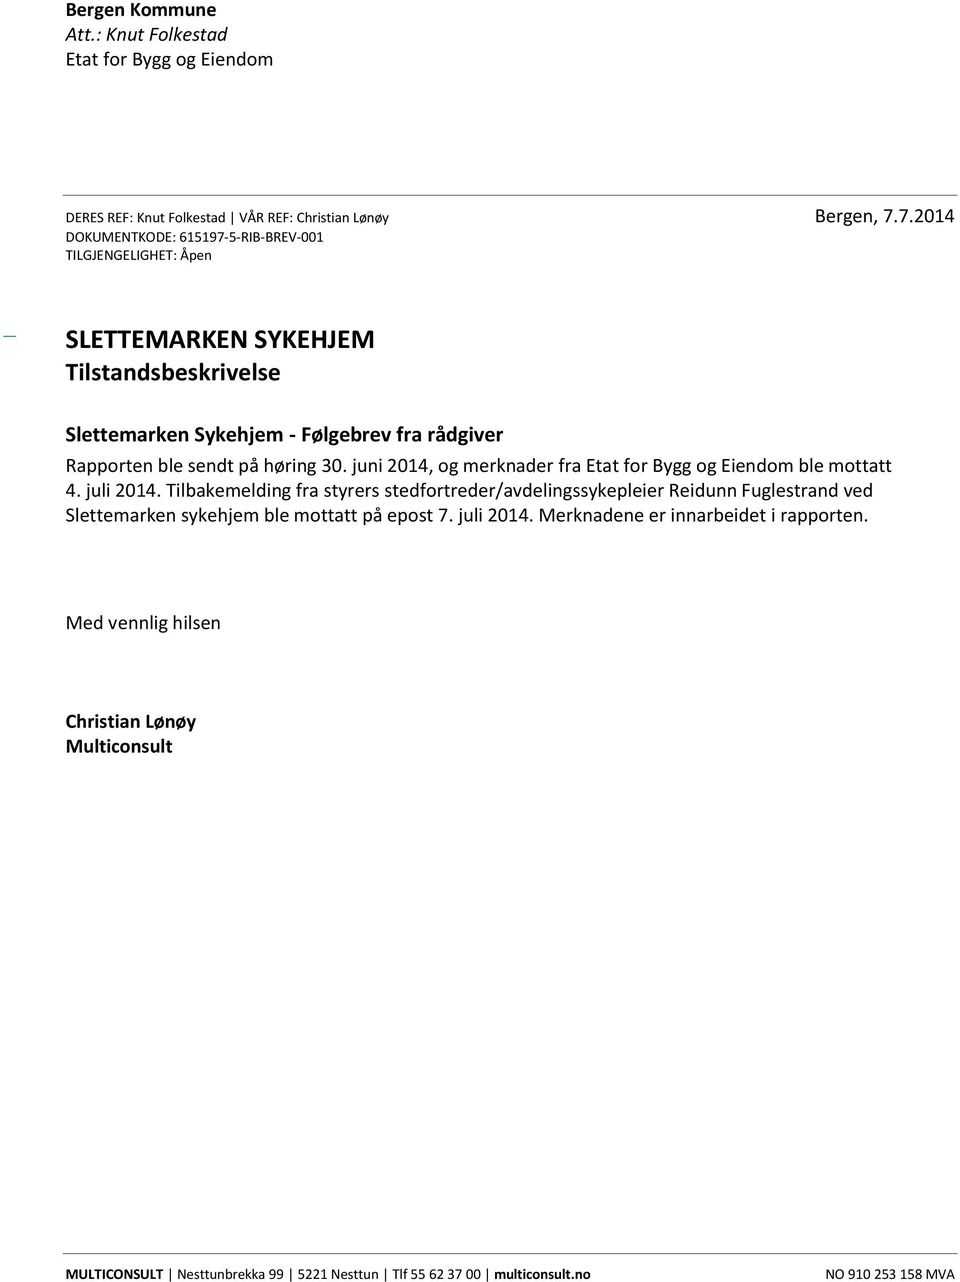 høring 30. juni 2014, og merknader fra Etat for Bygg og Eiendom ble mottatt 4. juli 2014.